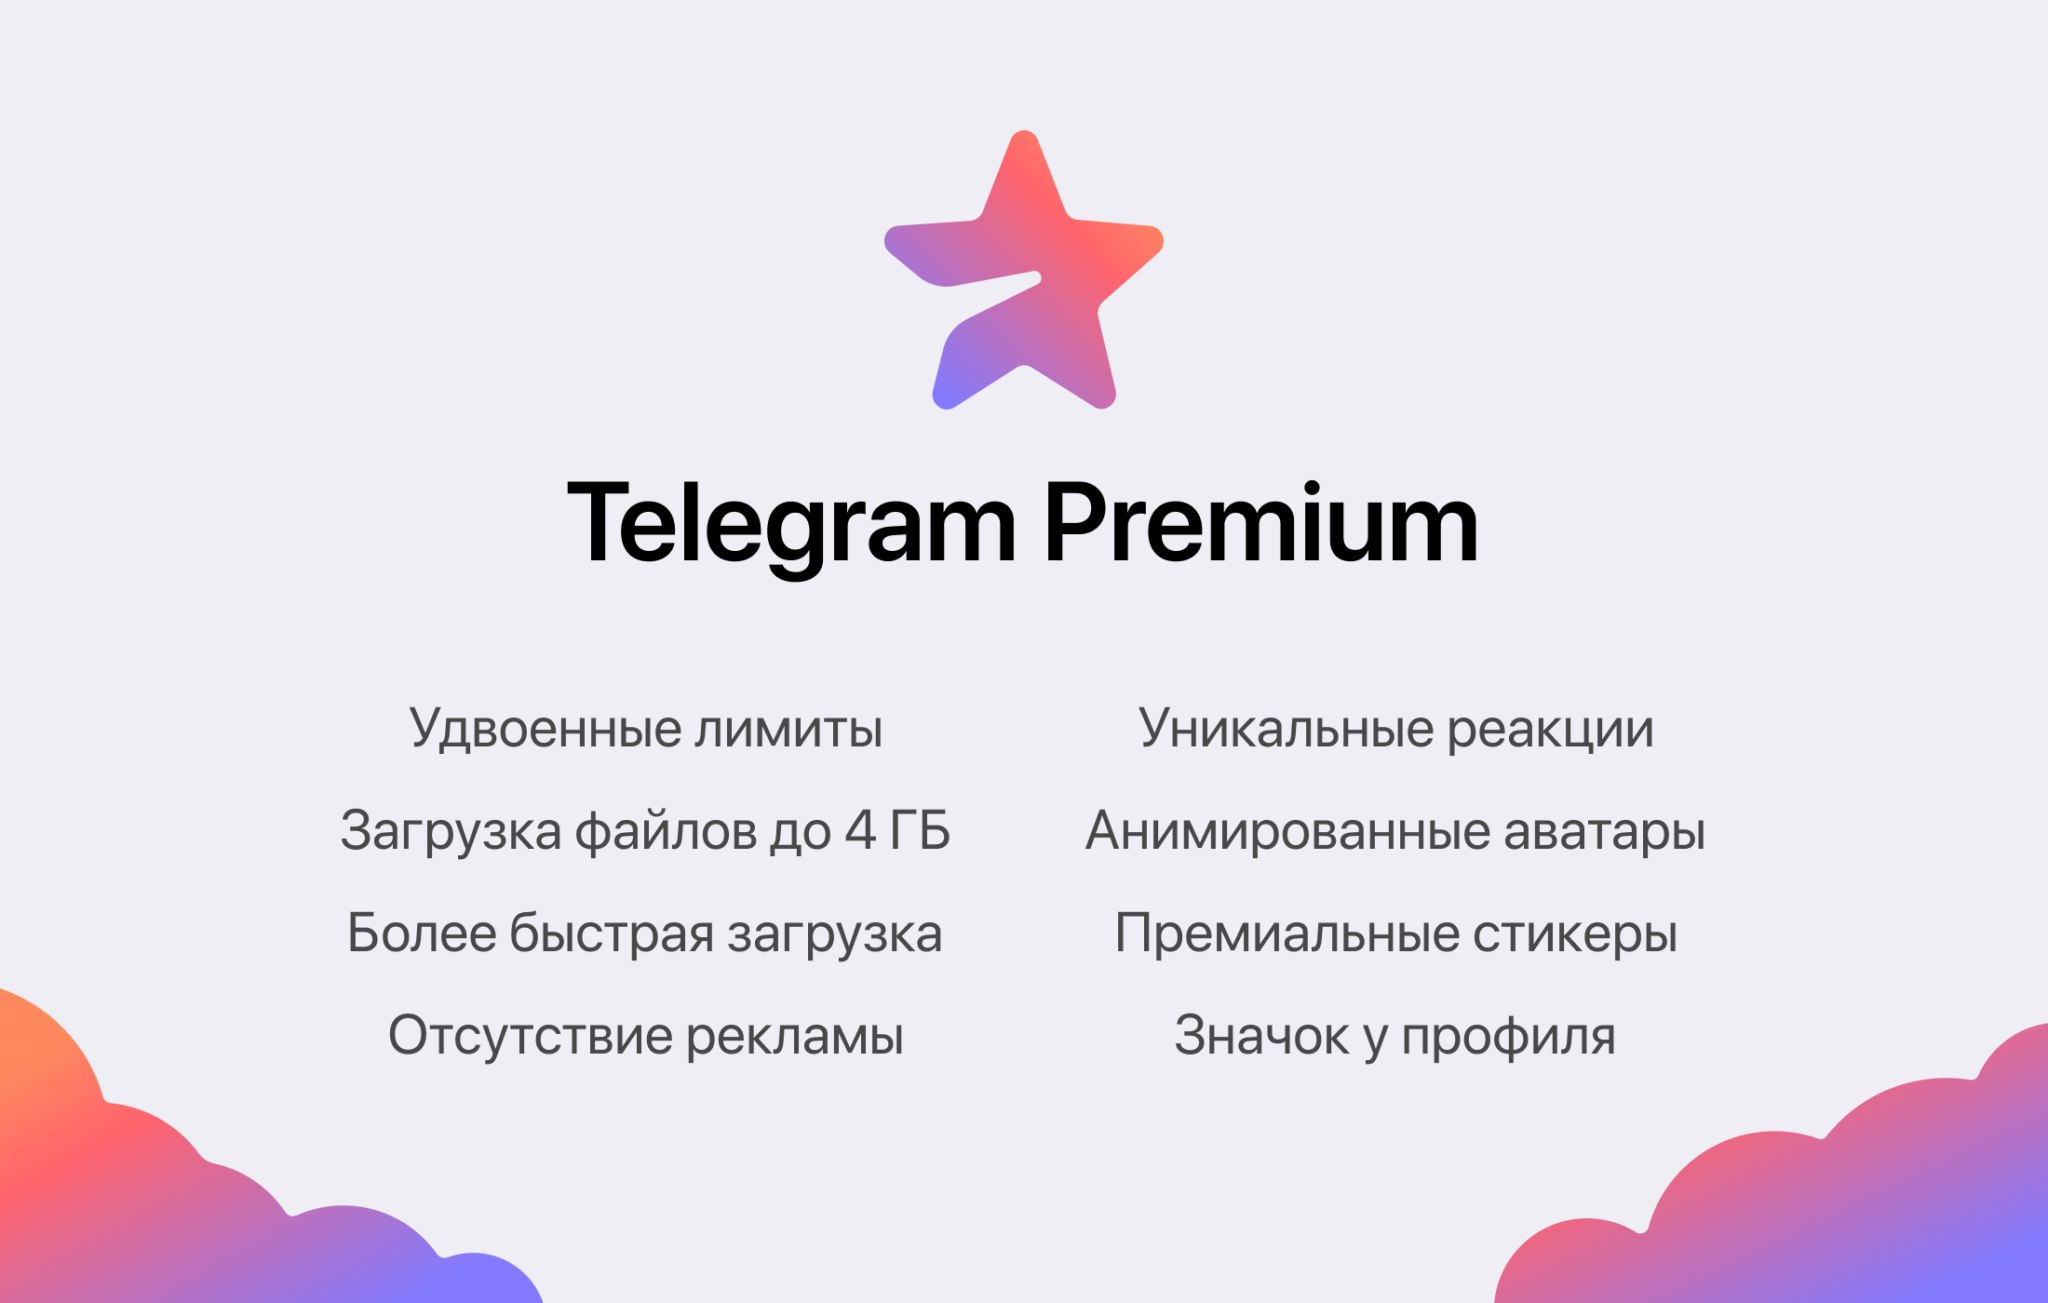 Brak reklam, wysyłanie pliku do 4 GB i unikalne reakcje: w wersji beta Telegrama pojawiła się subskrypcja premium